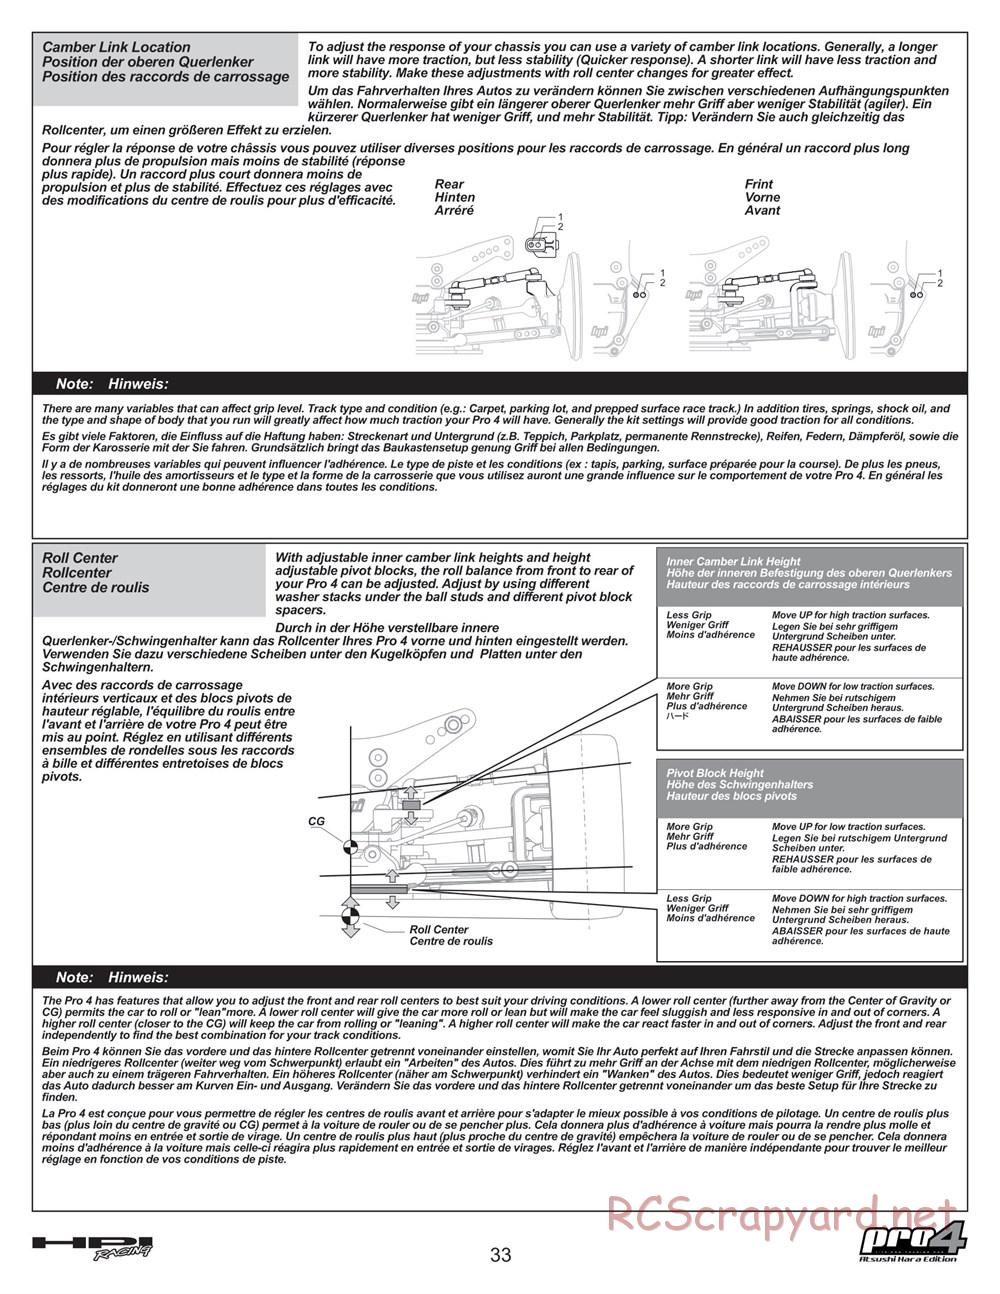 HPI - Pro4 Hara Edition - Manual - Page 33